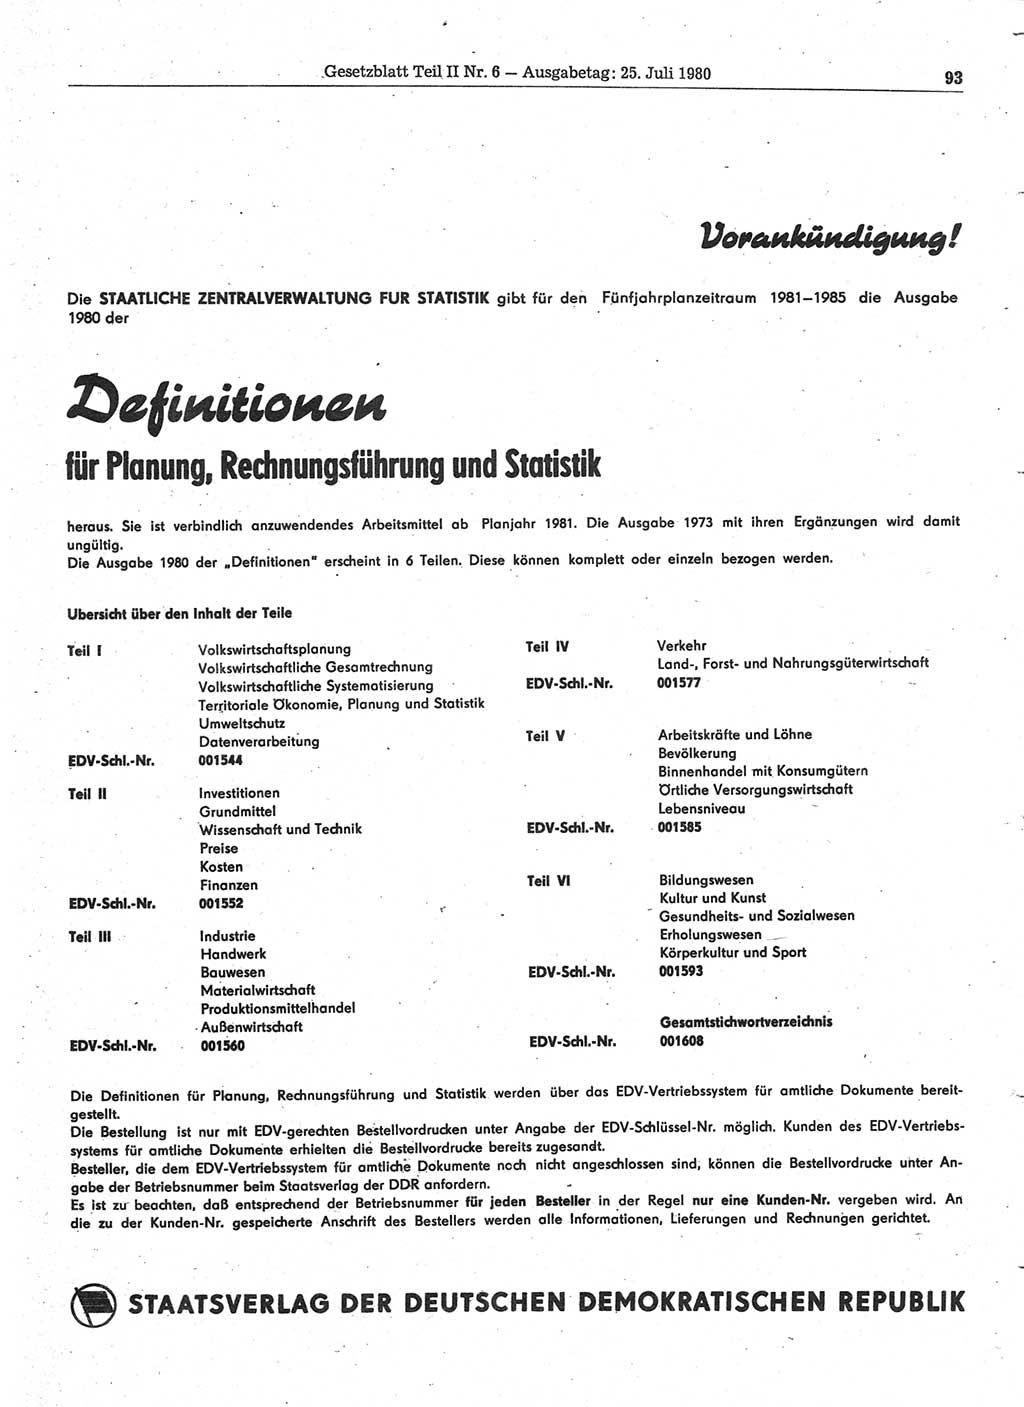 Gesetzblatt (GBl.) der Deutschen Demokratischen Republik (DDR) Teil ⅠⅠ 1980, Seite 93 (GBl. DDR ⅠⅠ 1980, S. 93)